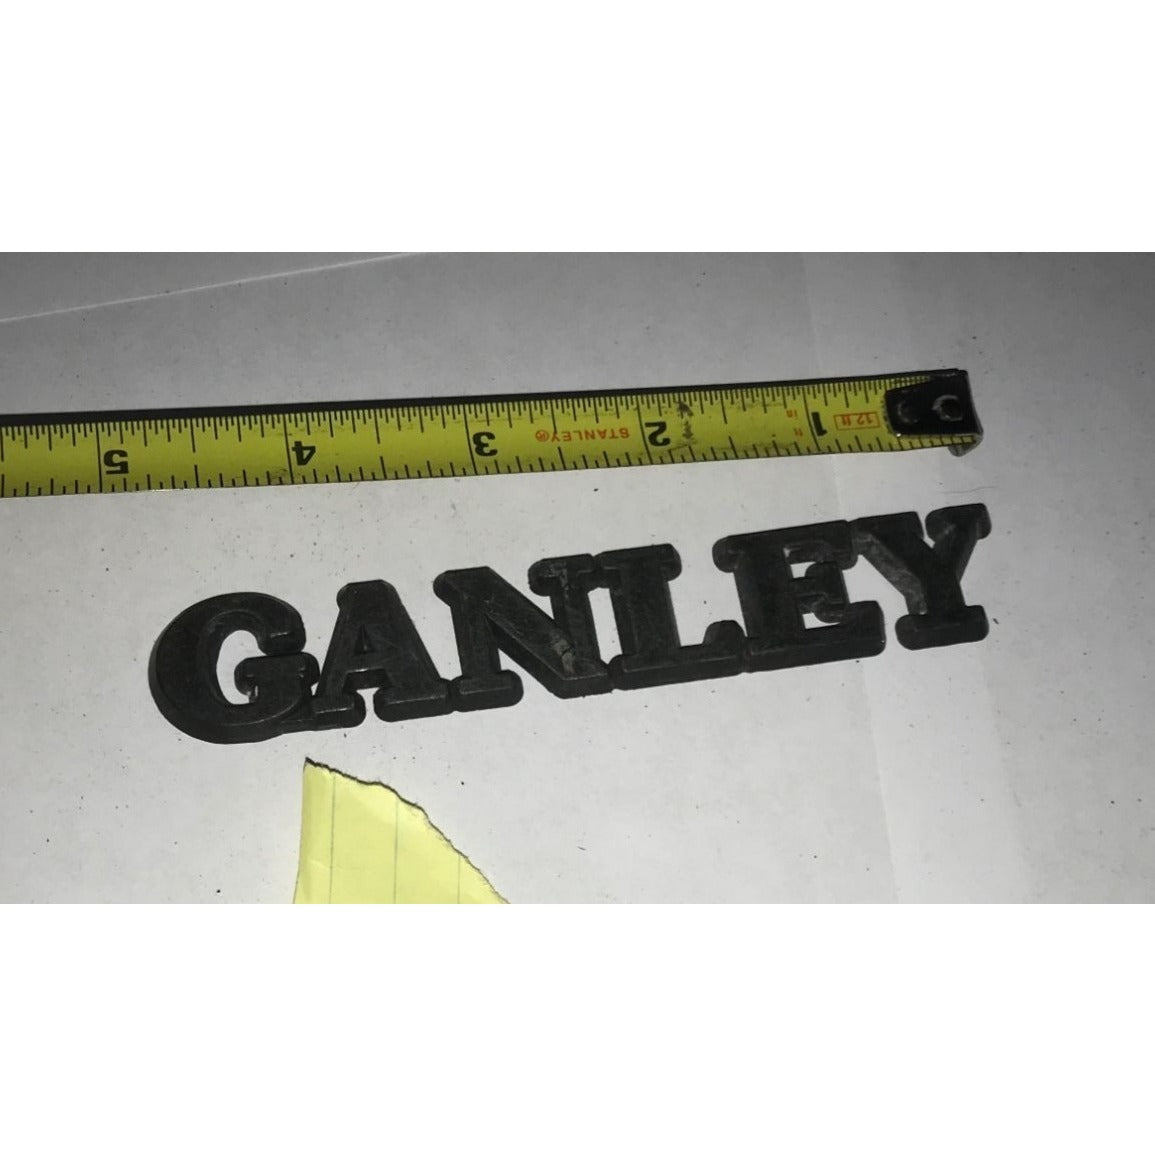 GANLEY Auto Patch/Emblem - Vintage Car Tag